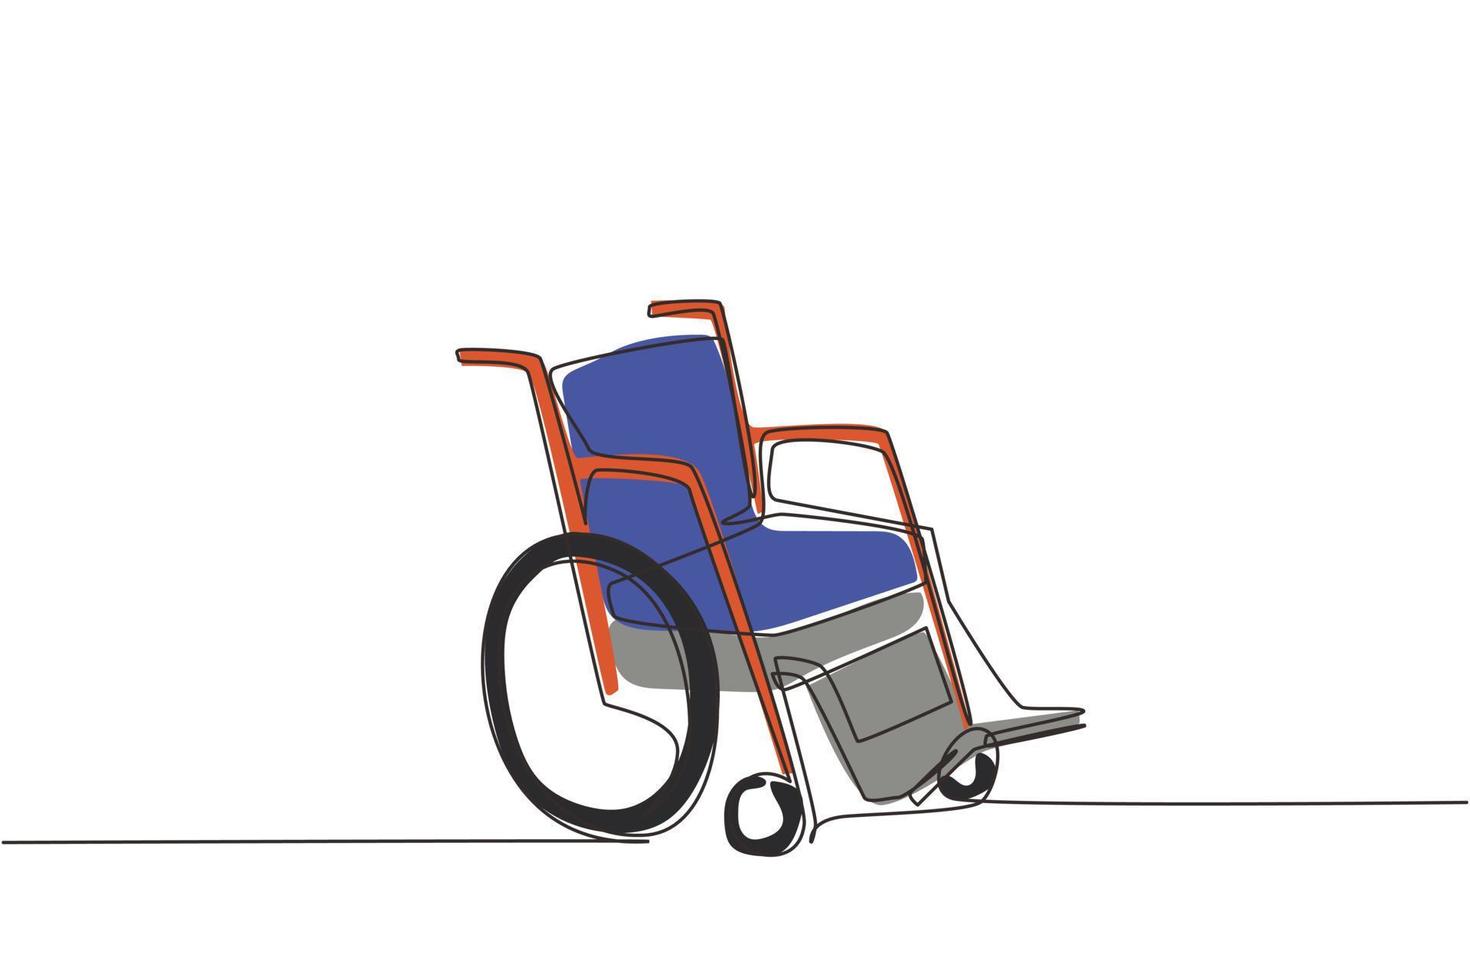 silla de ruedas de dibujo continuo de una línea para personas con discapacidades. Dispositivo de carro de cochecito de paseo vacío. objeto de terapia de salud dibujado a mano. ilustración gráfica de vector de diseño de dibujo de una sola línea